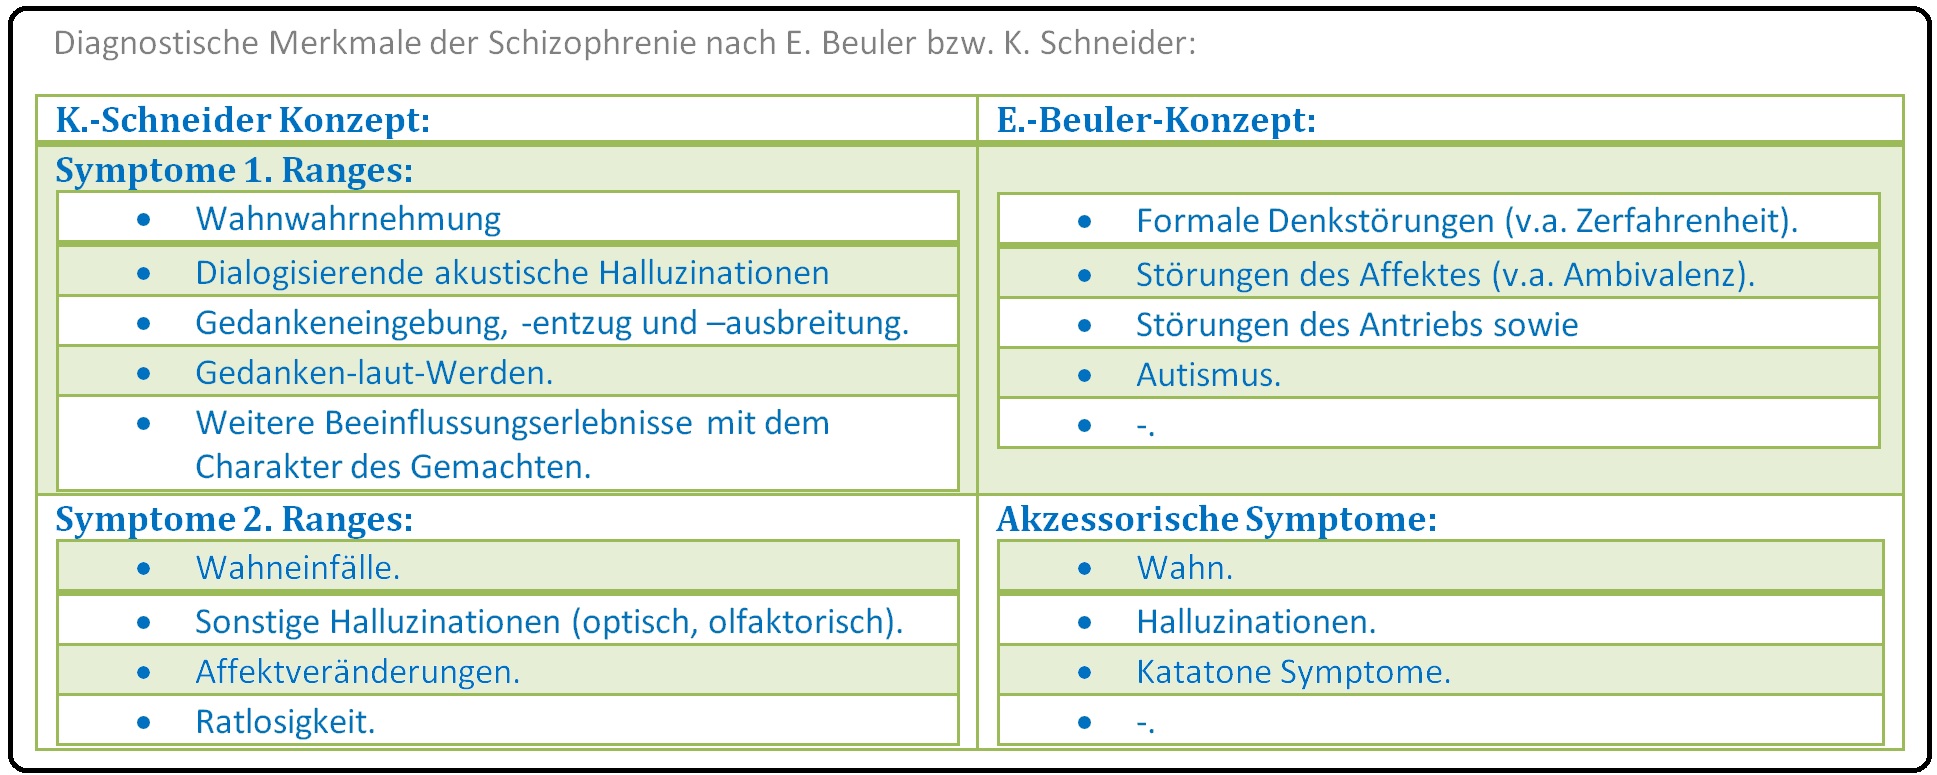 595 Diagnostische Merkmale der Schizophrenie nach E. Beuler bzw. K. Schneider